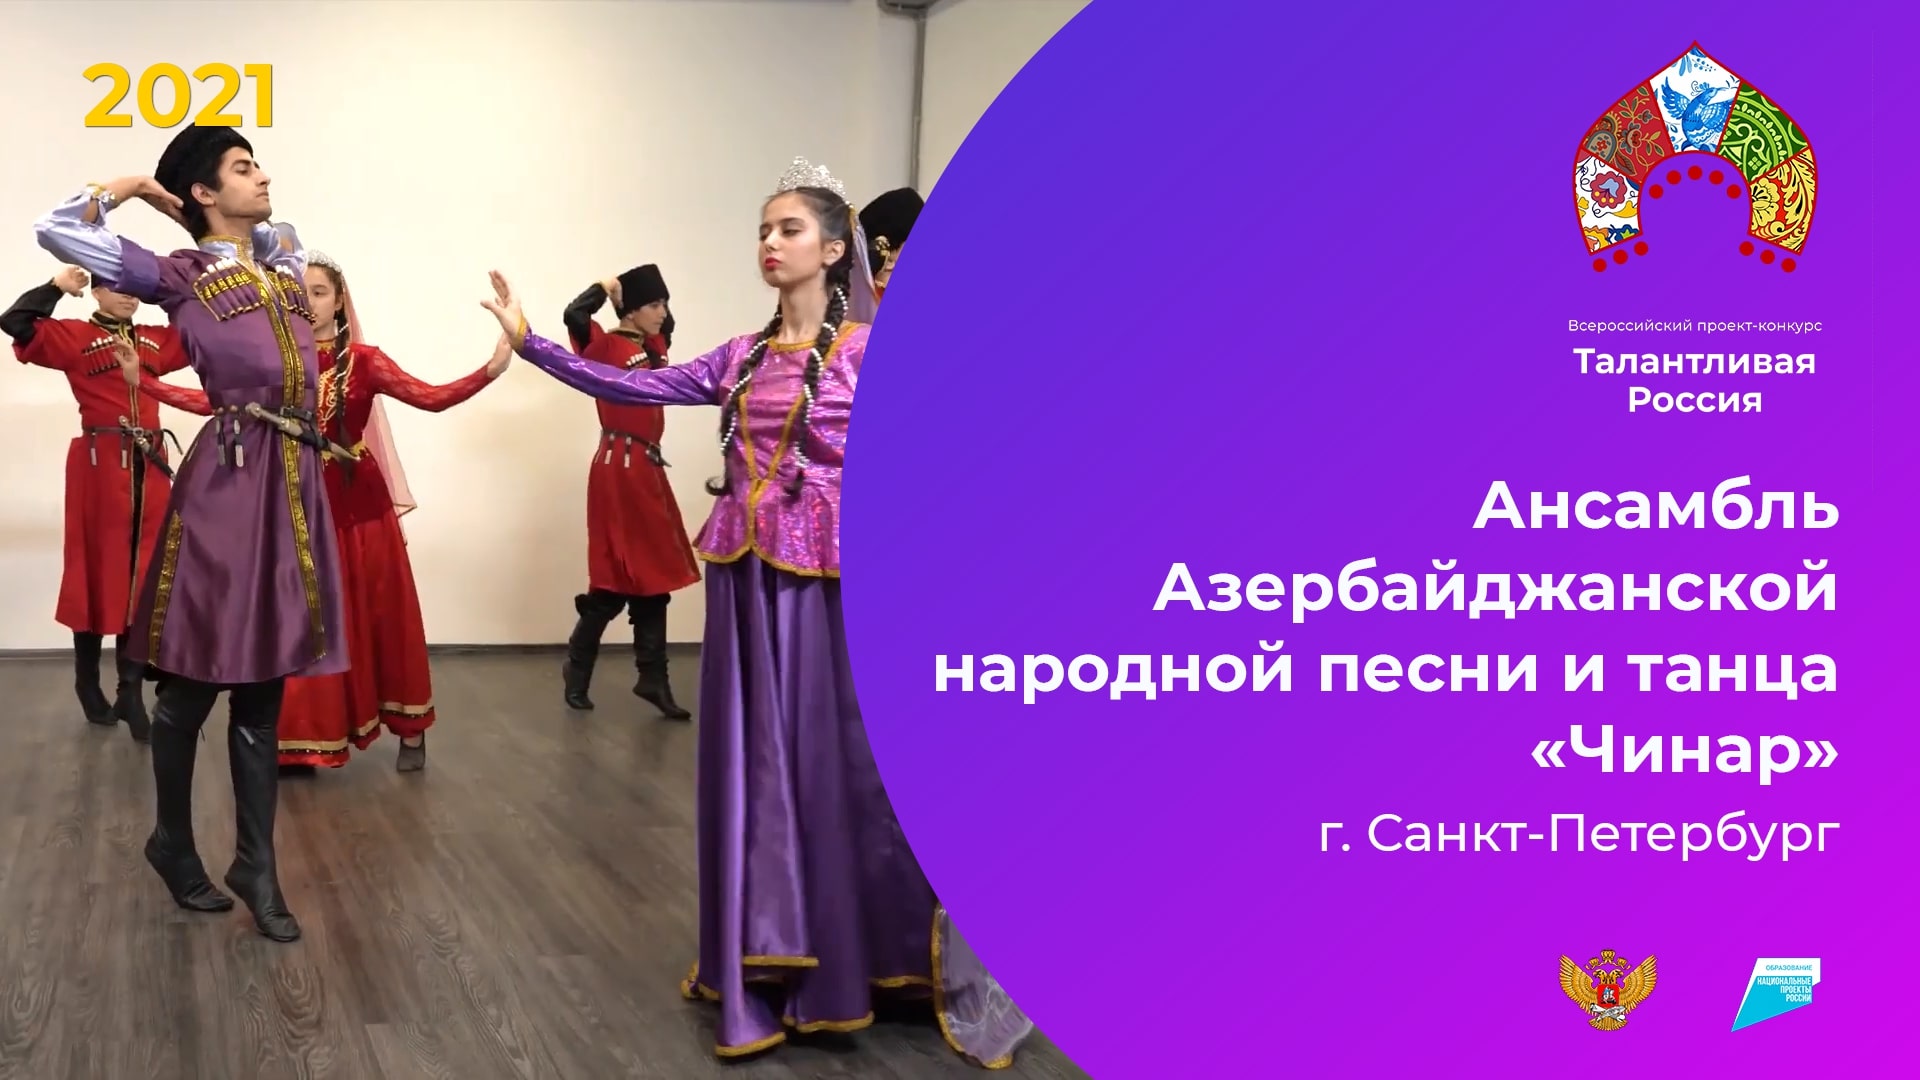 Ансамбль Азербайджанской народной песни и танца «Чинар»